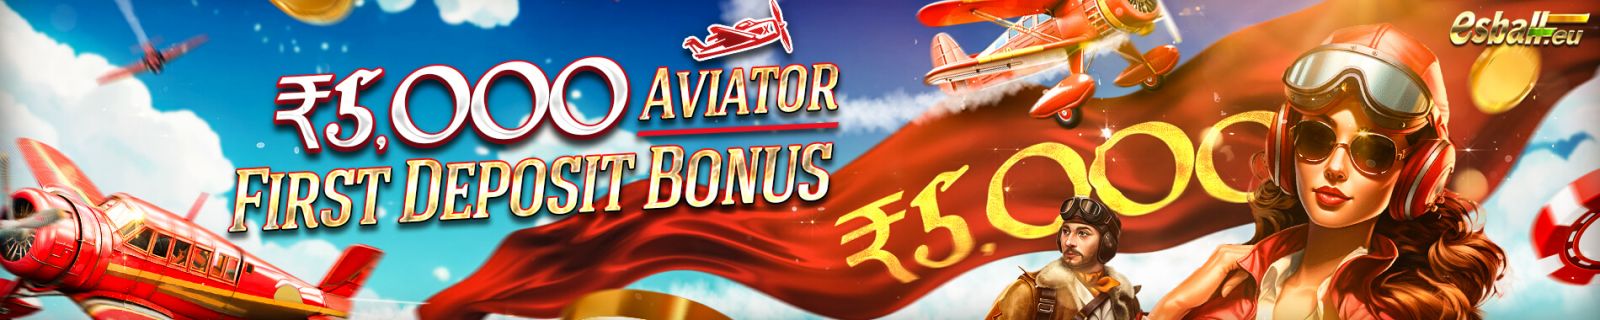 ₹10,000 Aviator Rocket Crash Game First Deposit Bonus